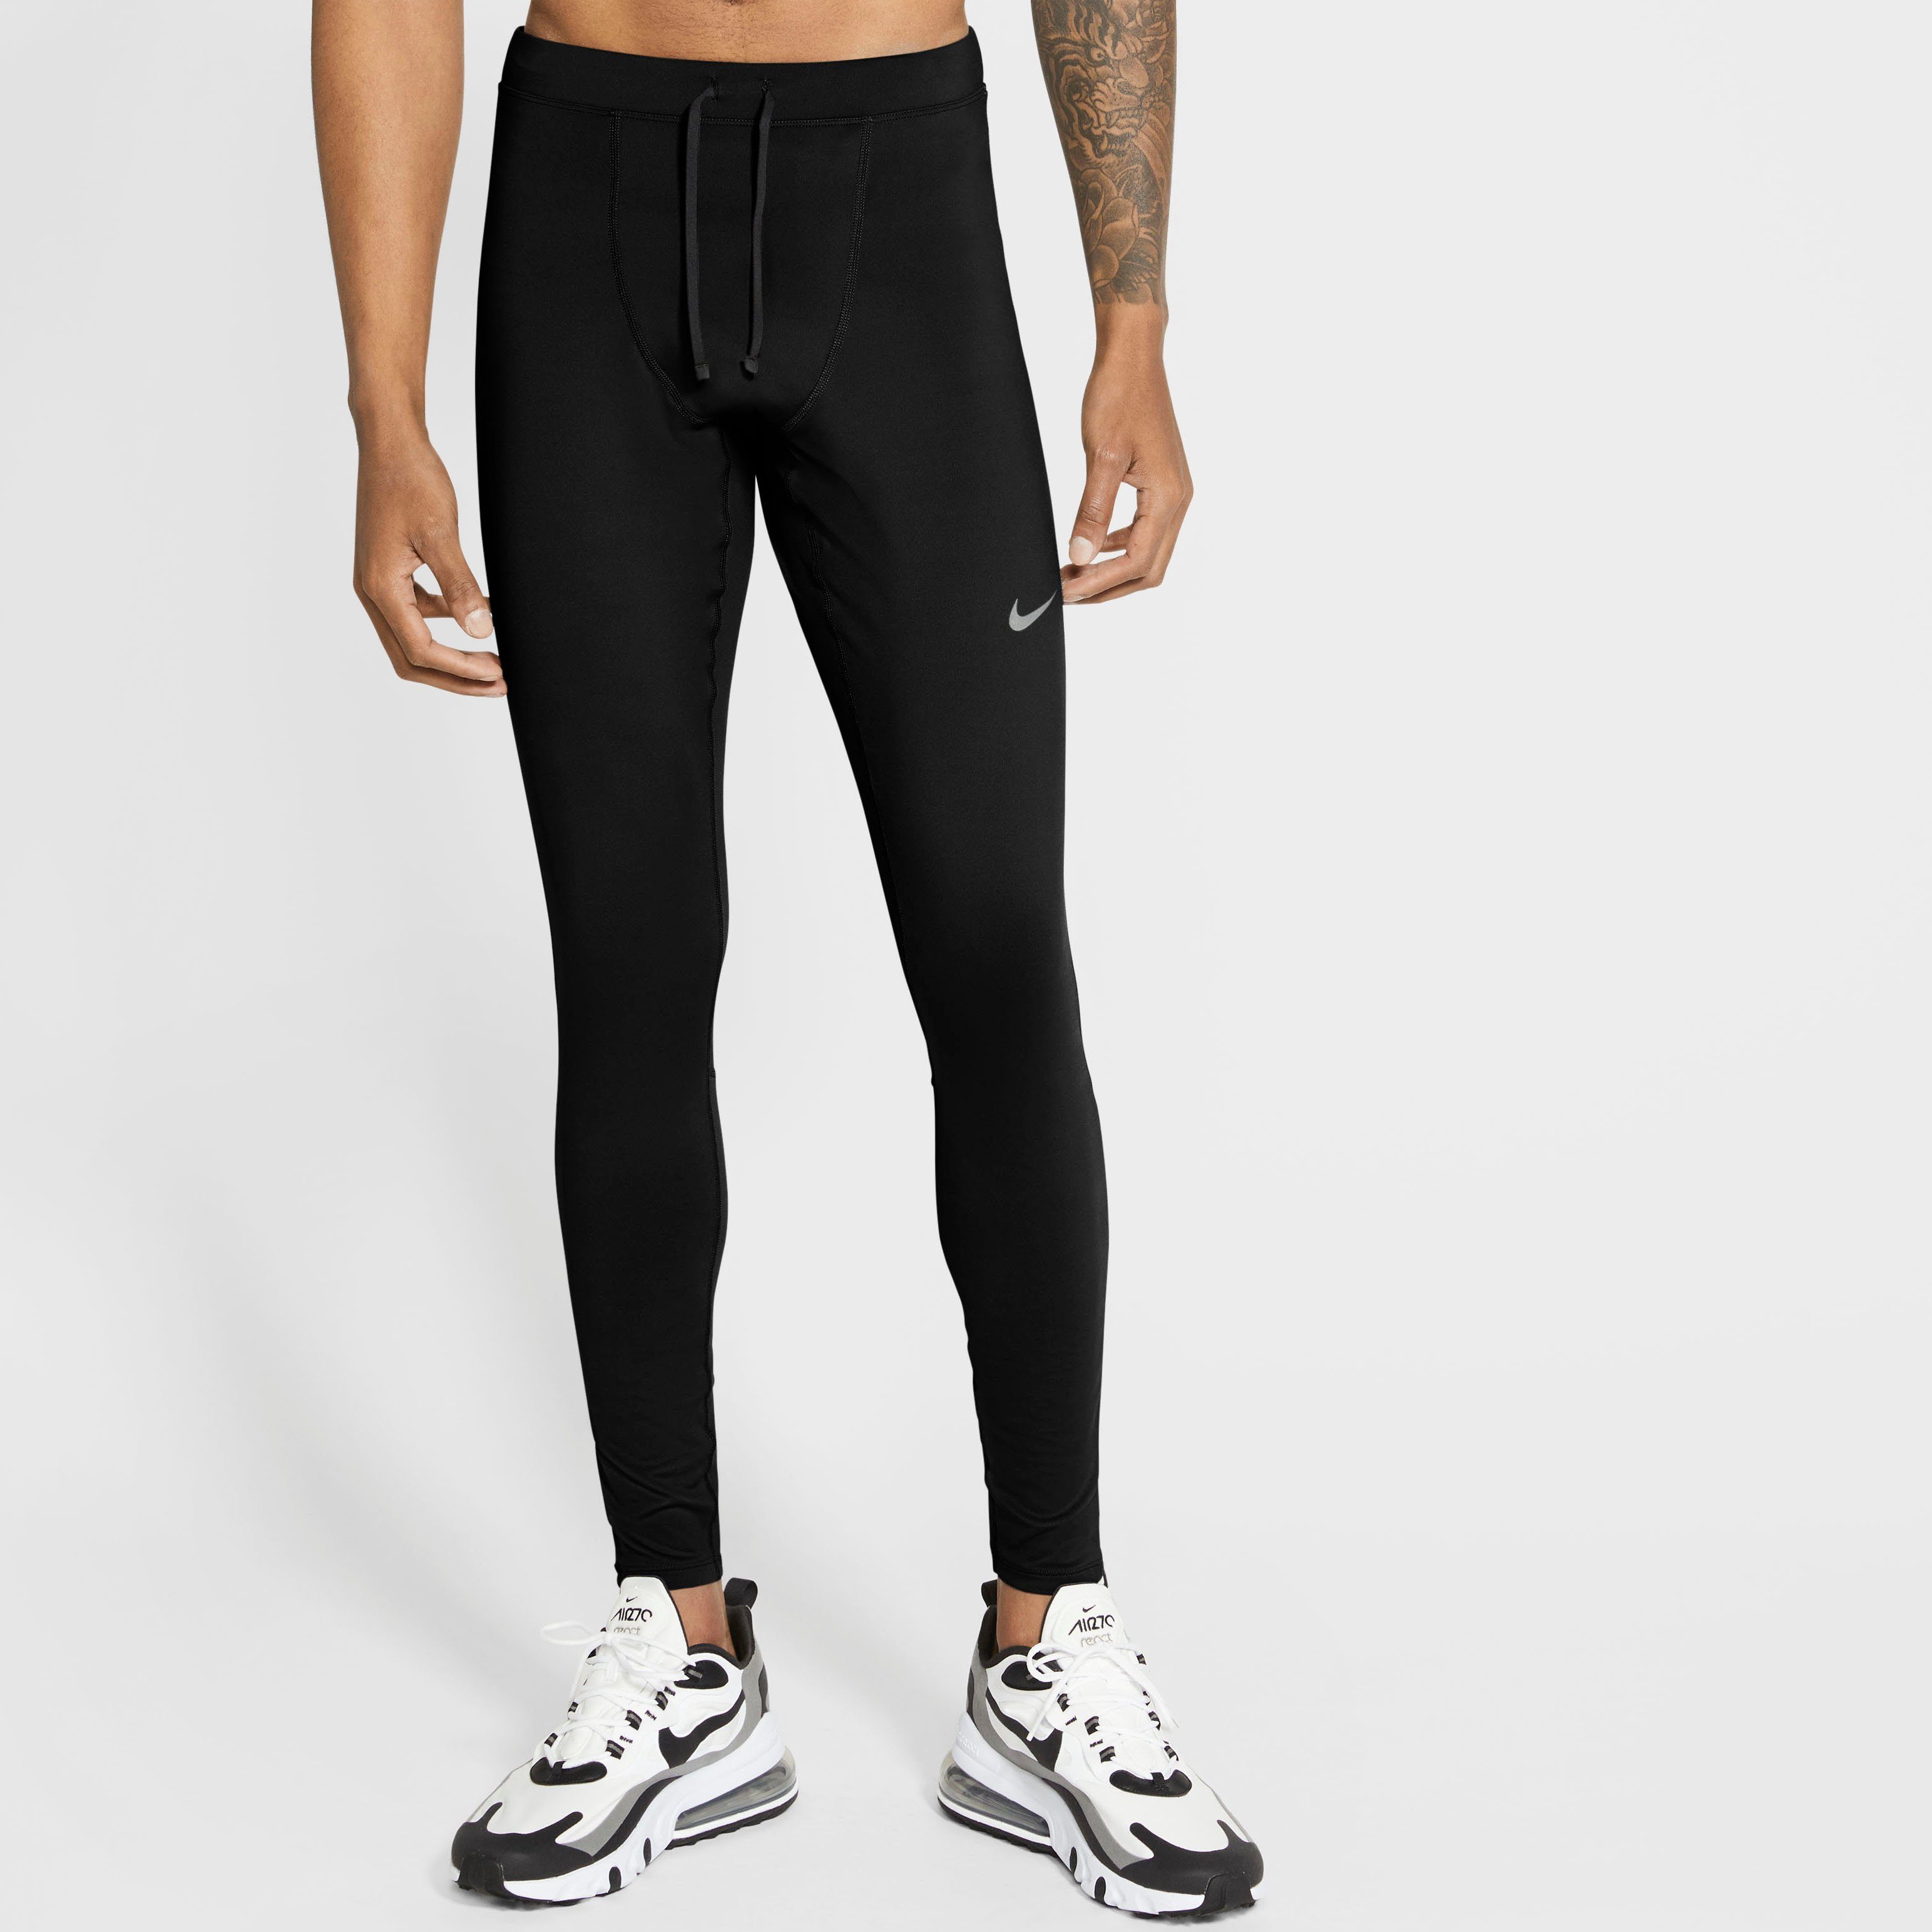 Nike Tight Herren online kaufen | OTTO